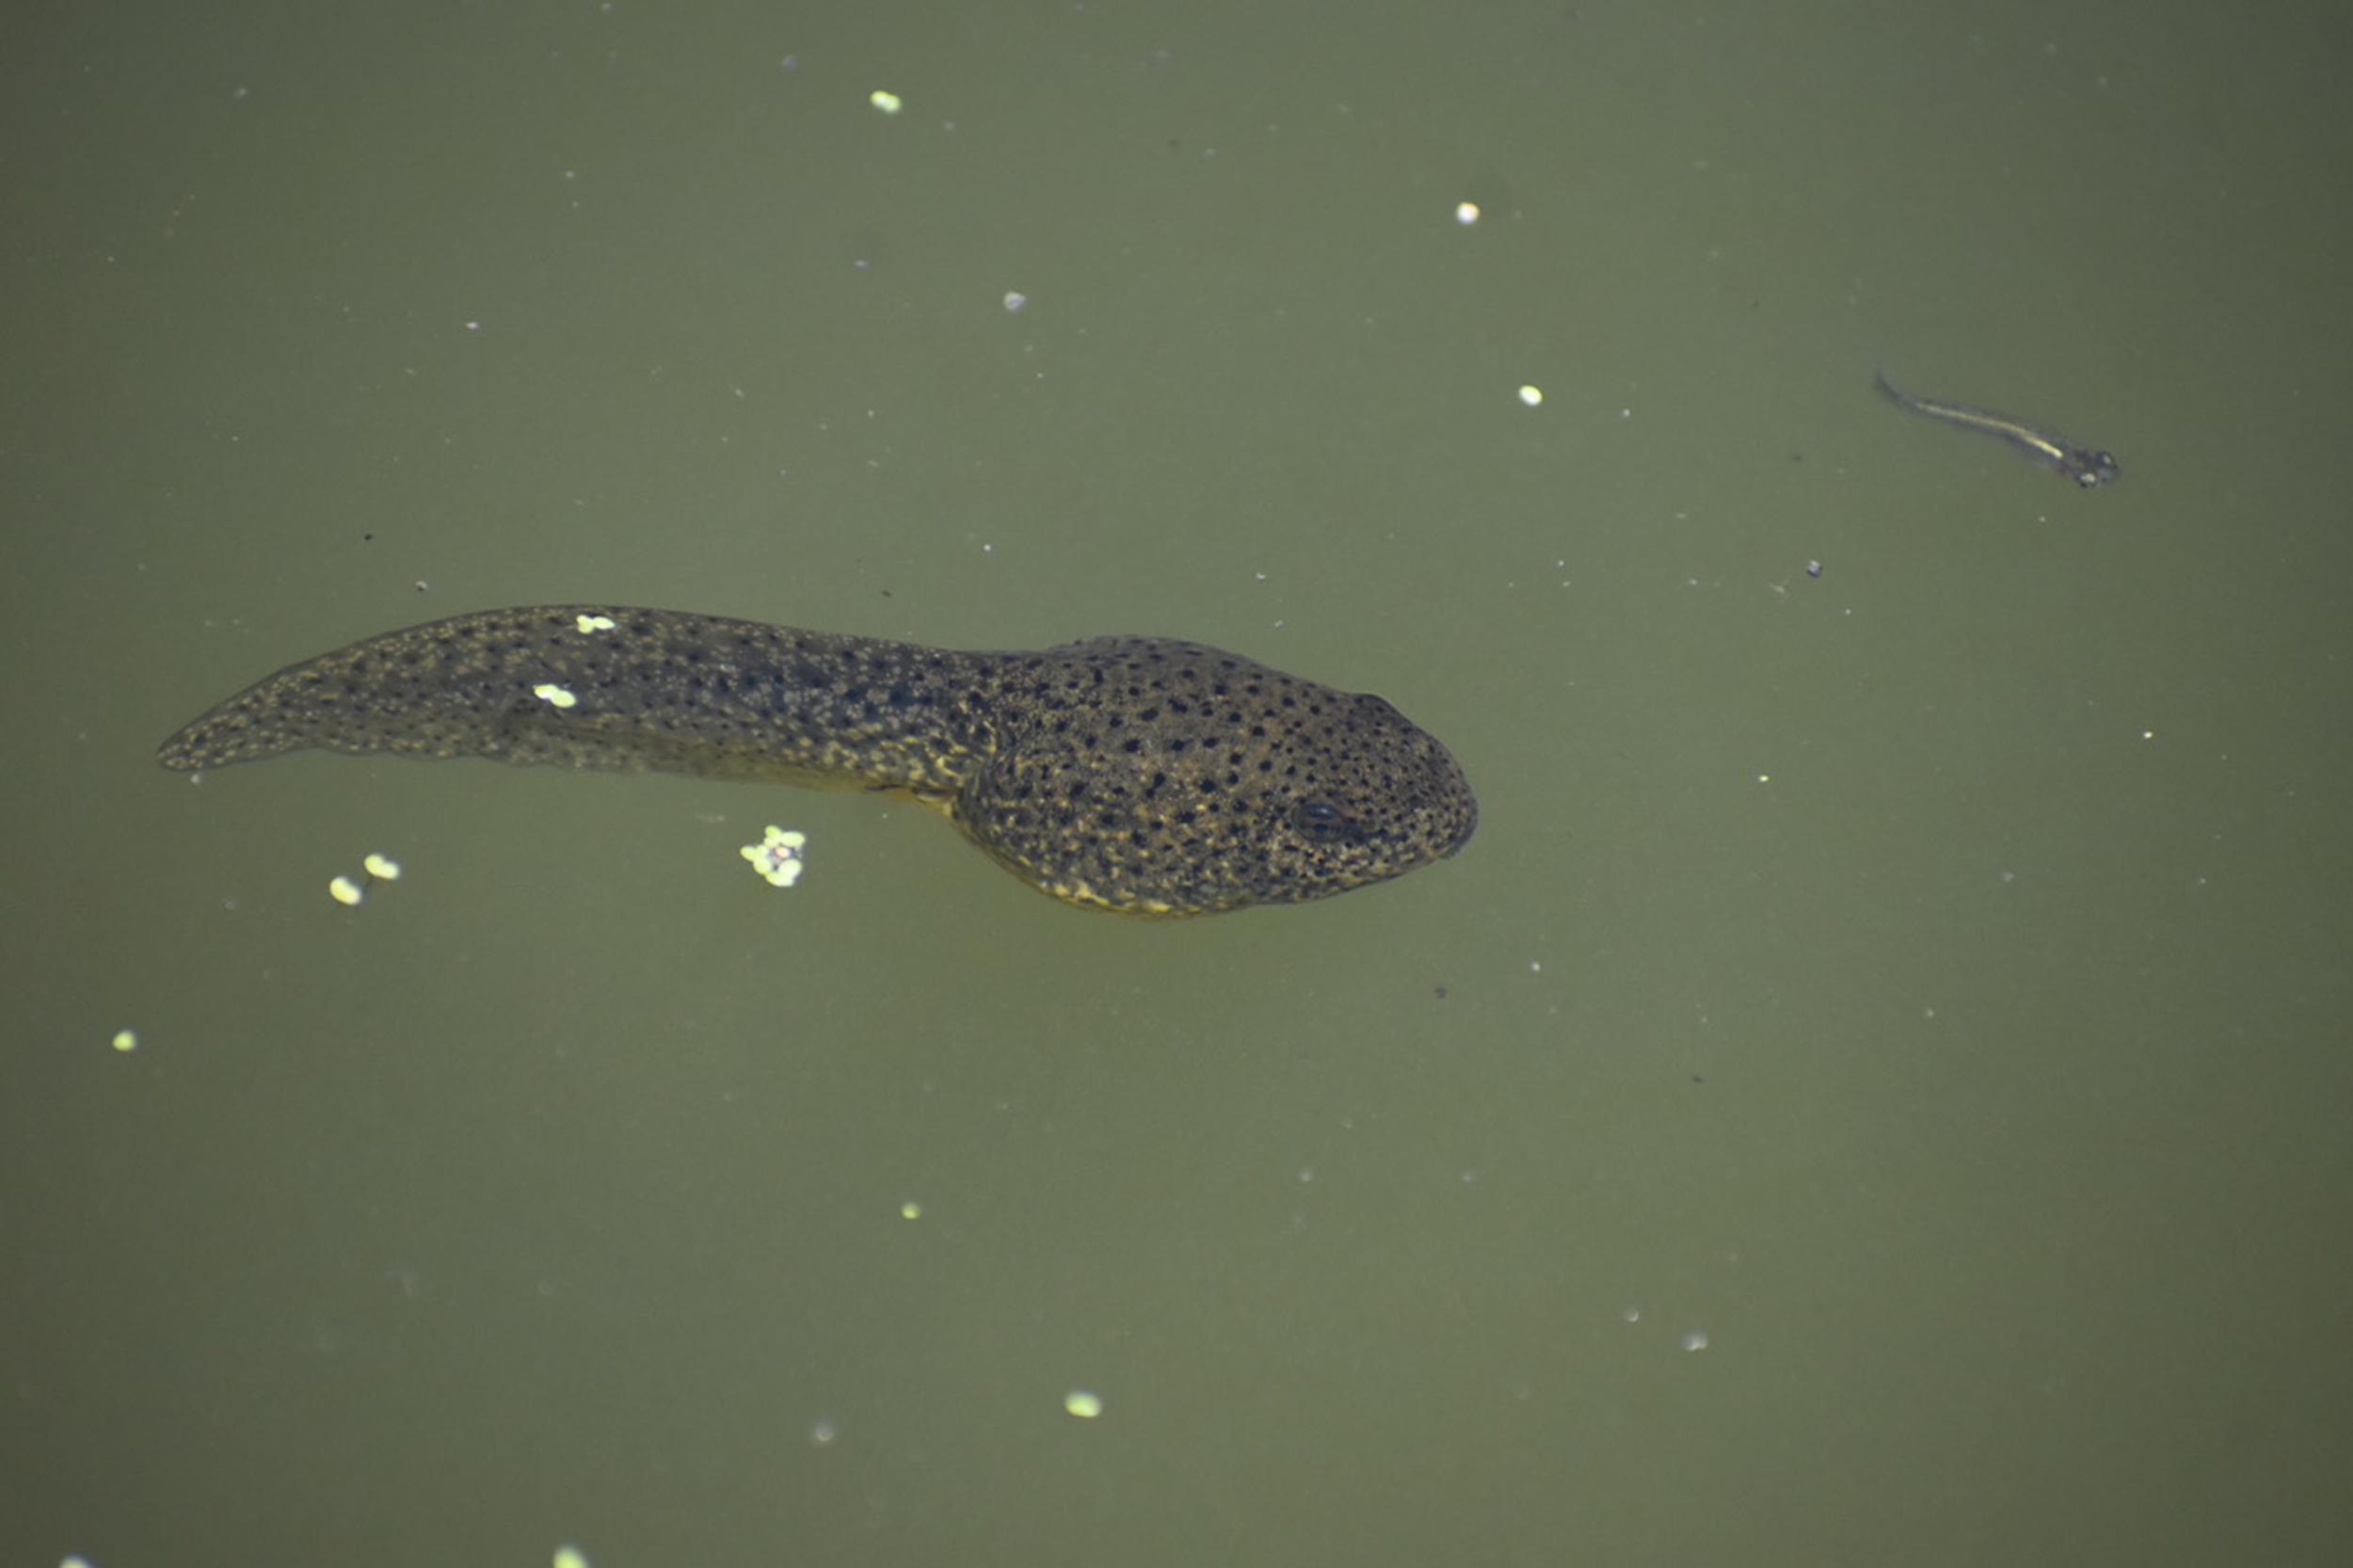 Bullfrog tadpole in water